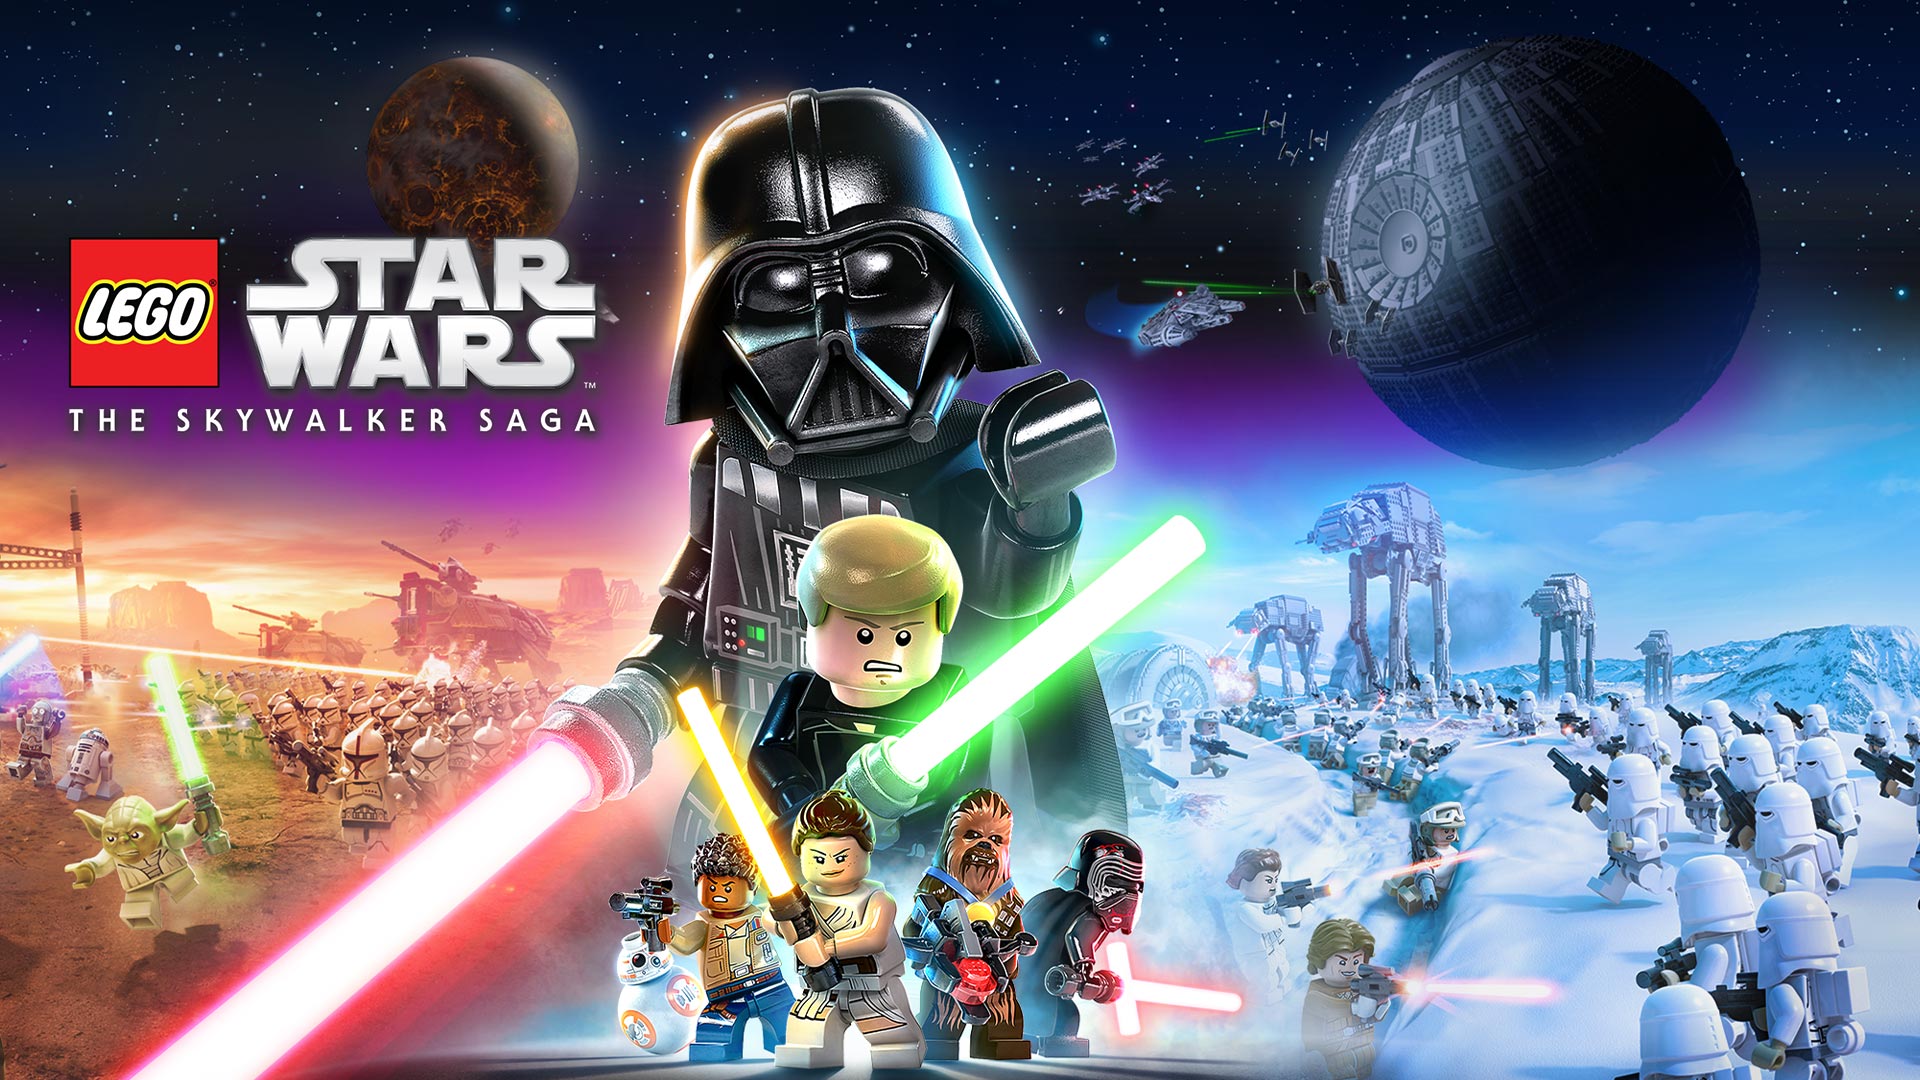 LEGO Starwars The Skywalker Saga, koláž postav s vesmírnými bitvami na pozadí. 